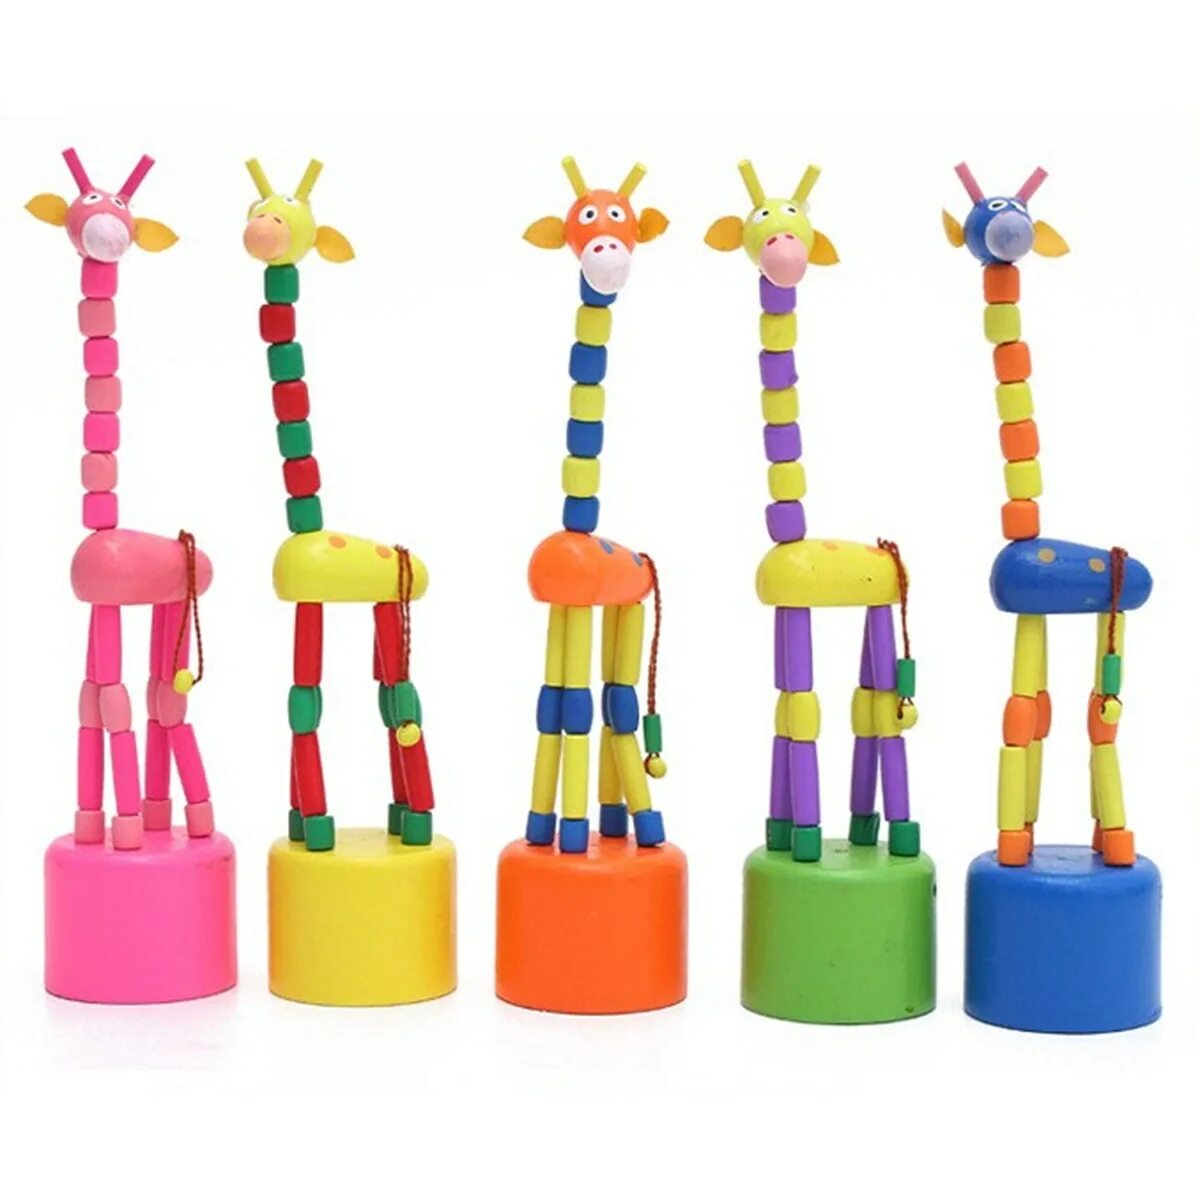 Деревянный Жираф дергунчик. Игрушка Жирафик. Детская игрушка деревянная Жирафик. Танцующая игрушка.